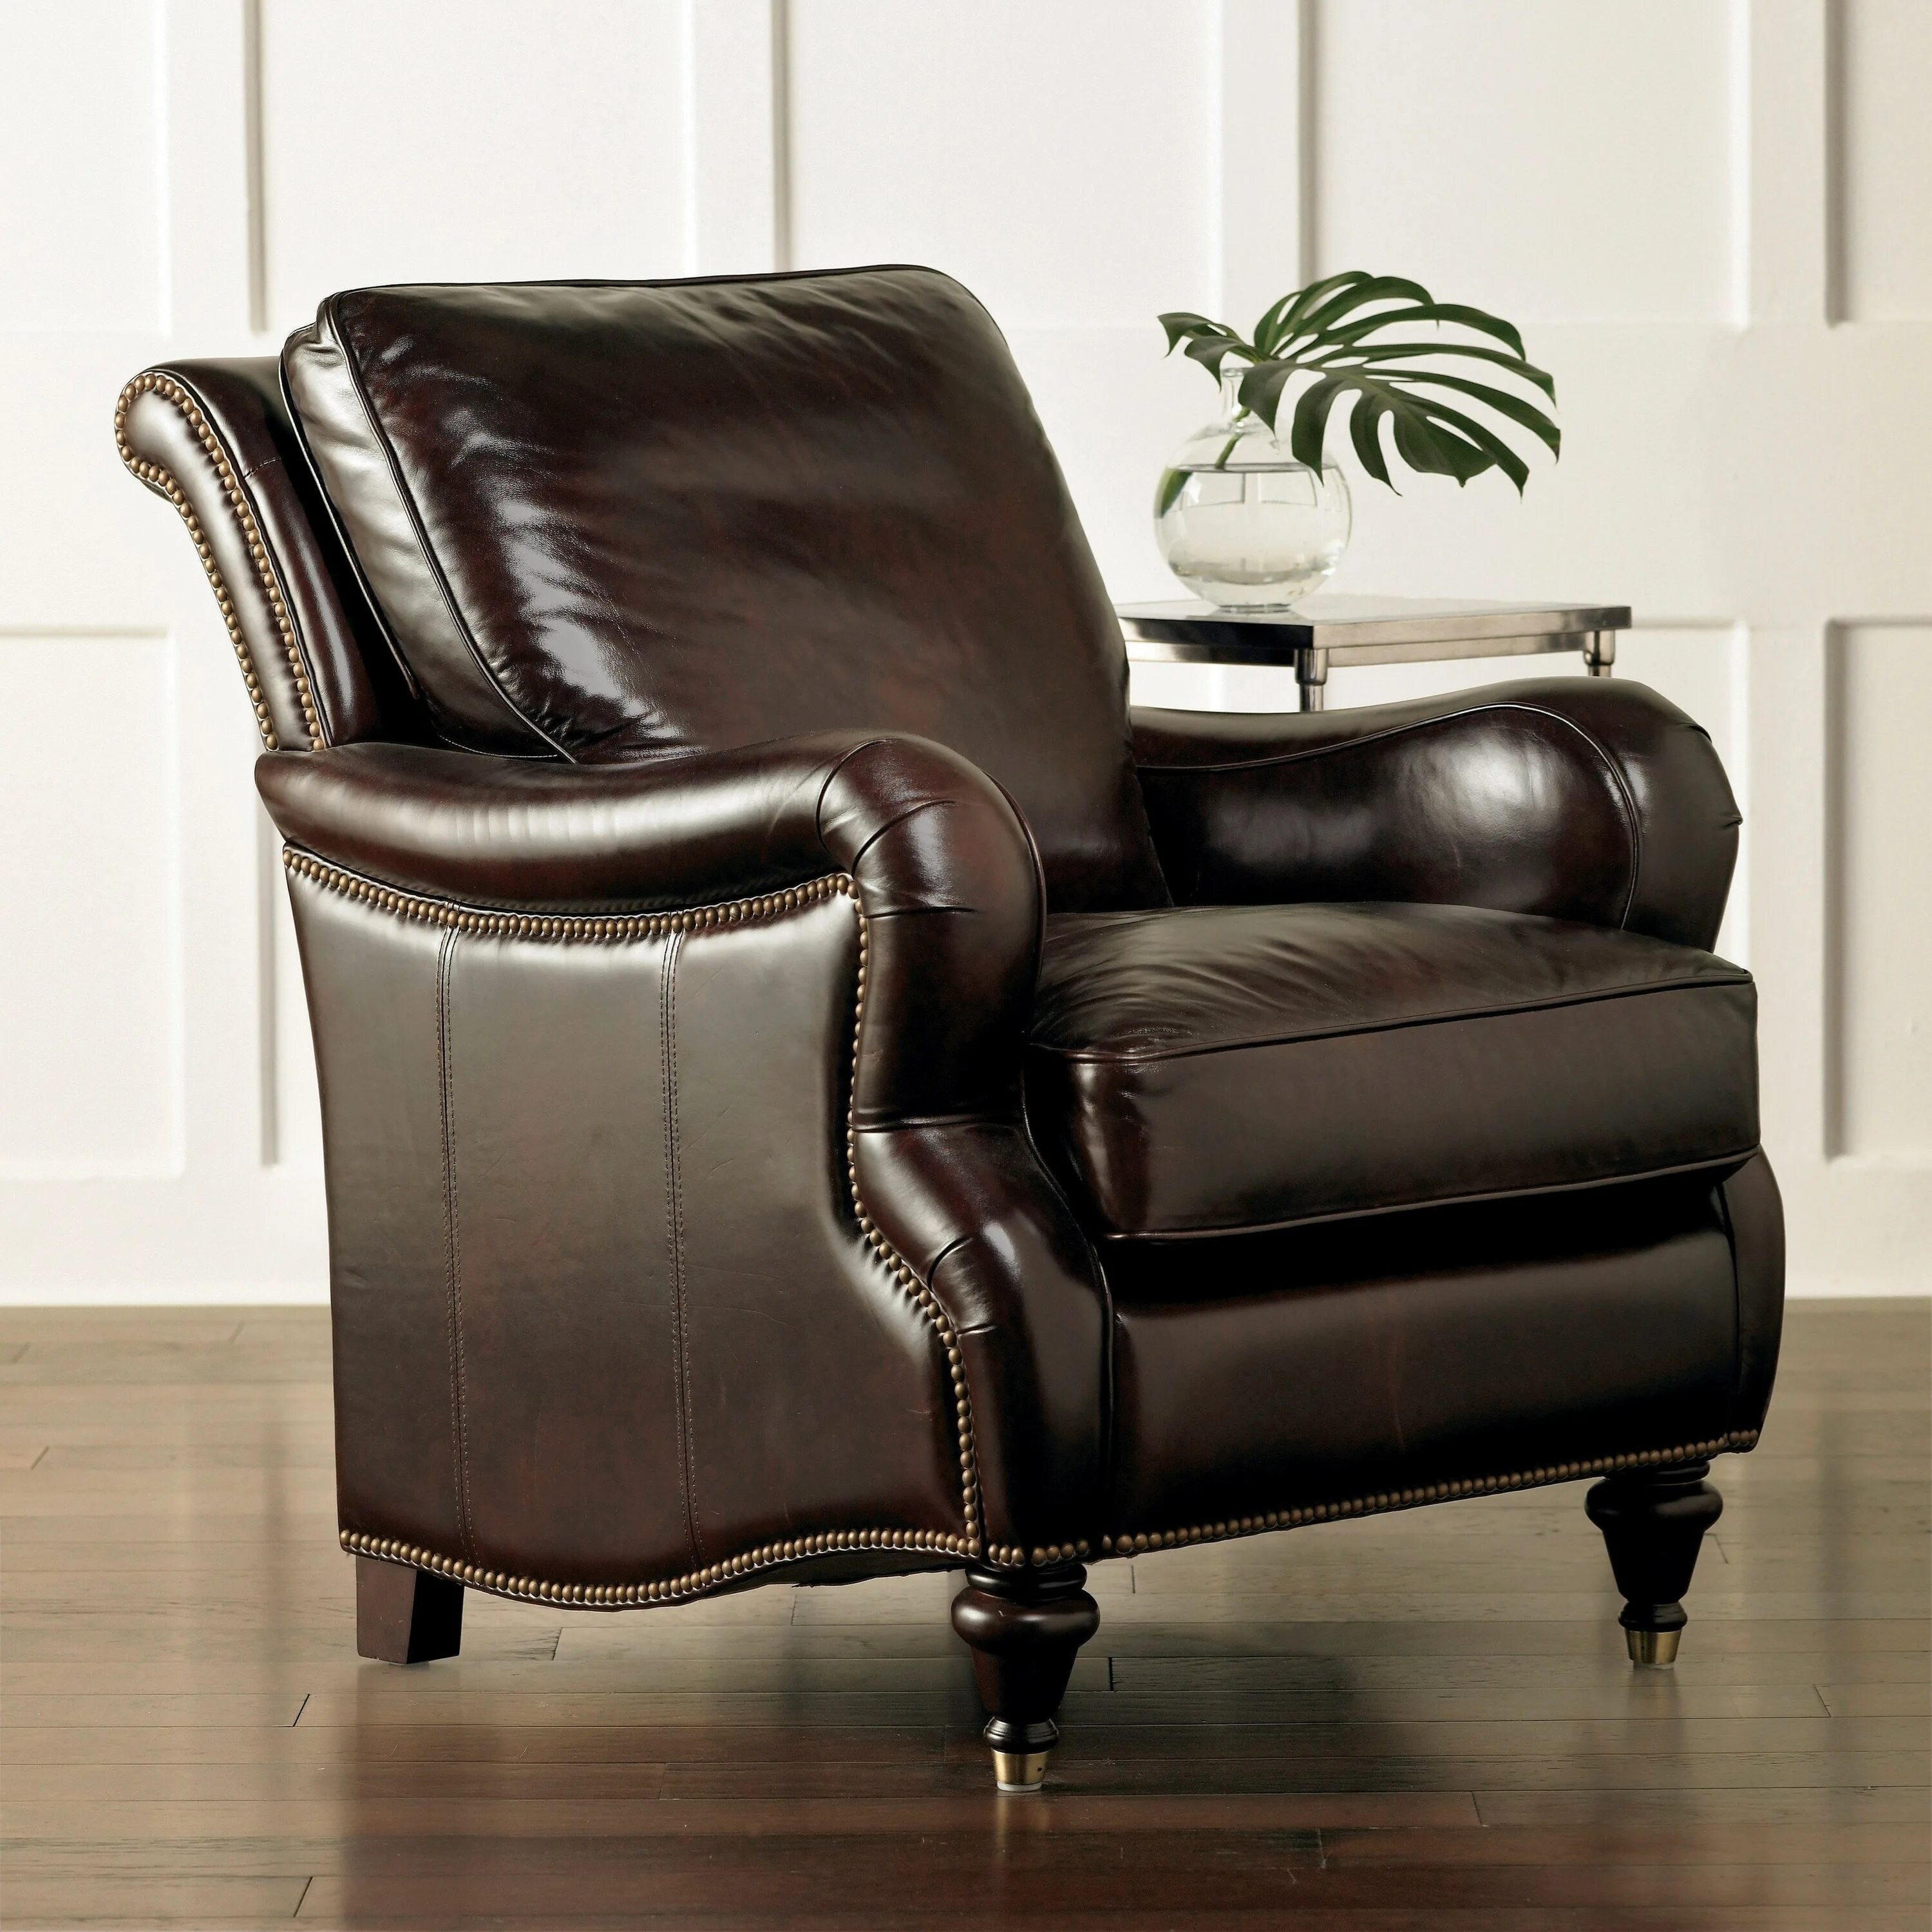 Высокое кожаное кресло. Кресло Оксфорд кожаное. Кожаные кресла для гостиной. Кожаное кресло в интерьере. Кресло кожаное гостиная.